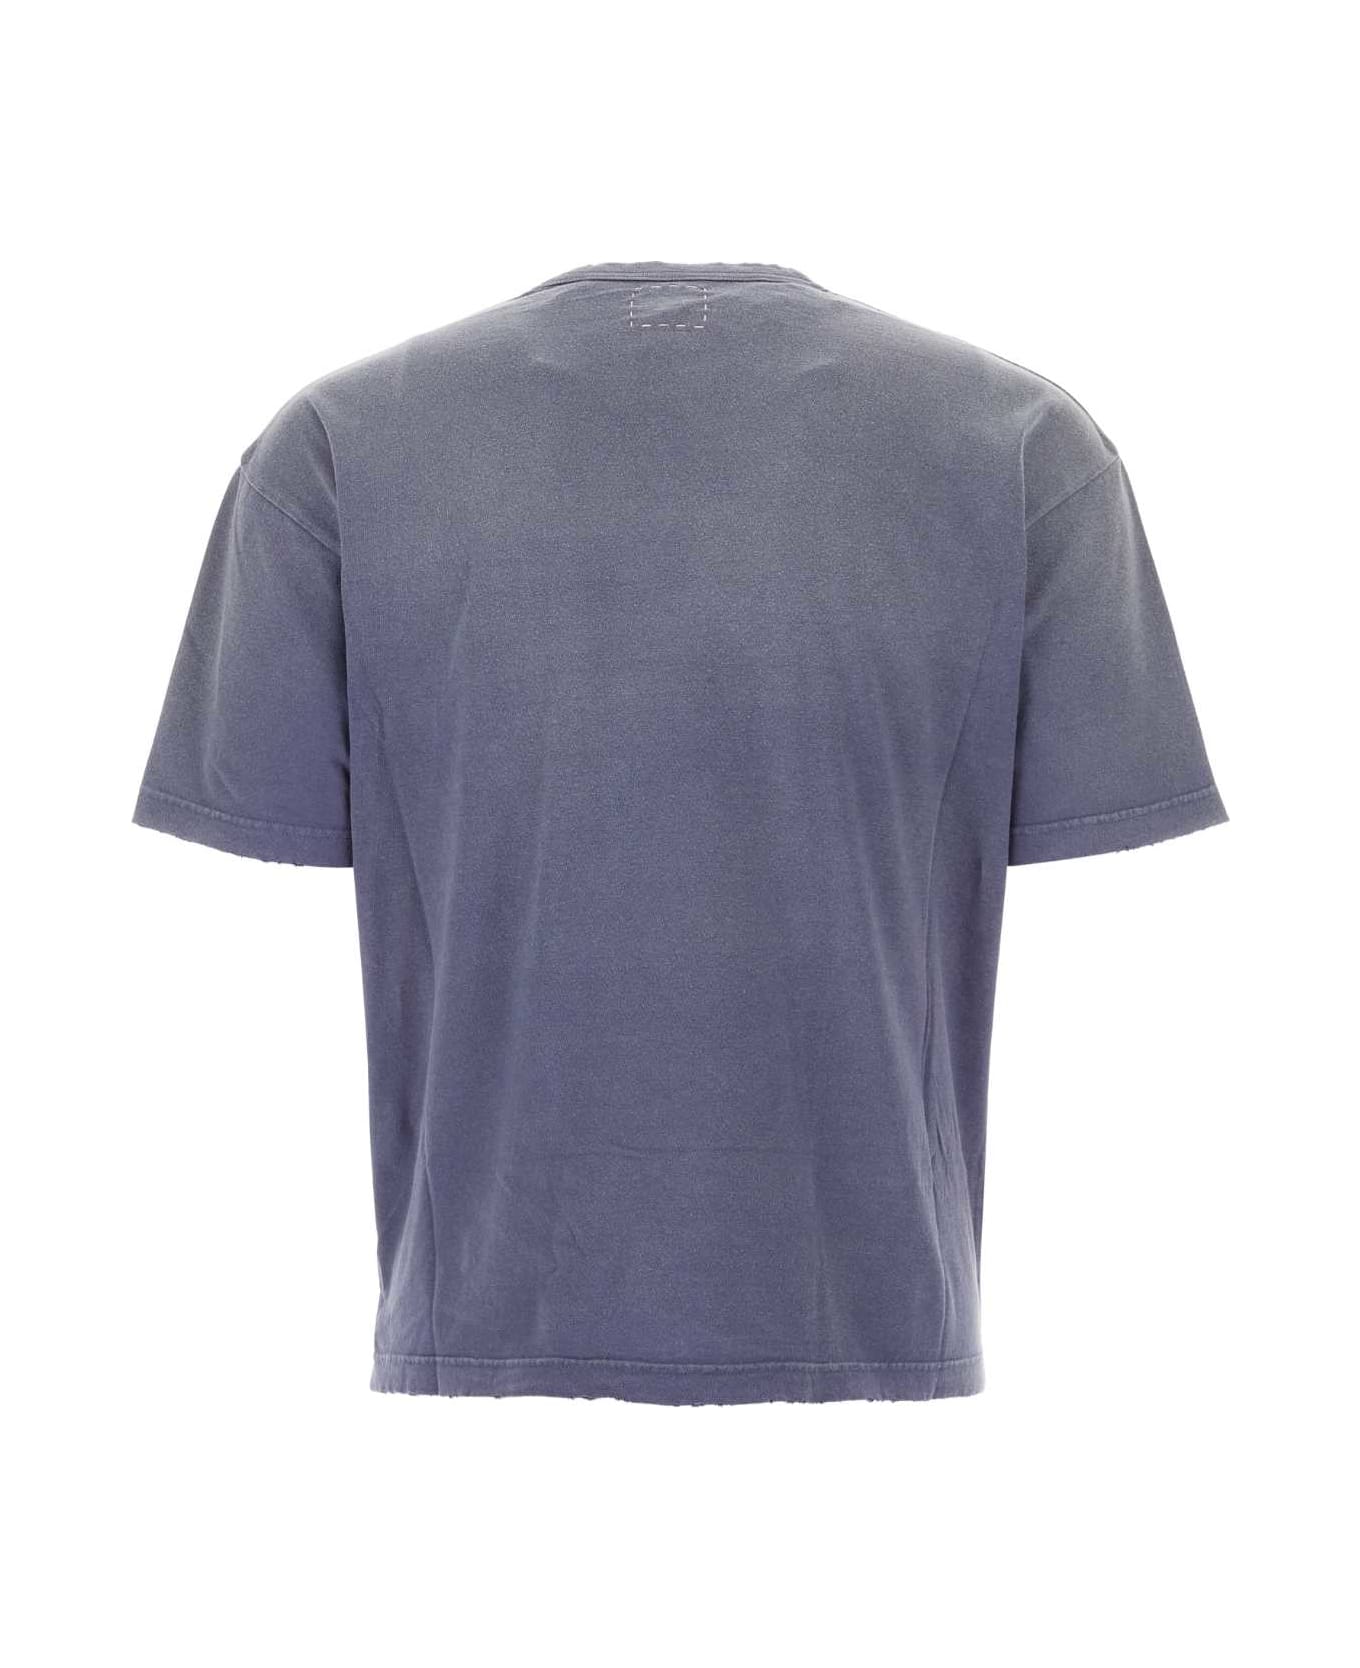 Visvim Purple Cotton Jumbo T-shirt - NAVY